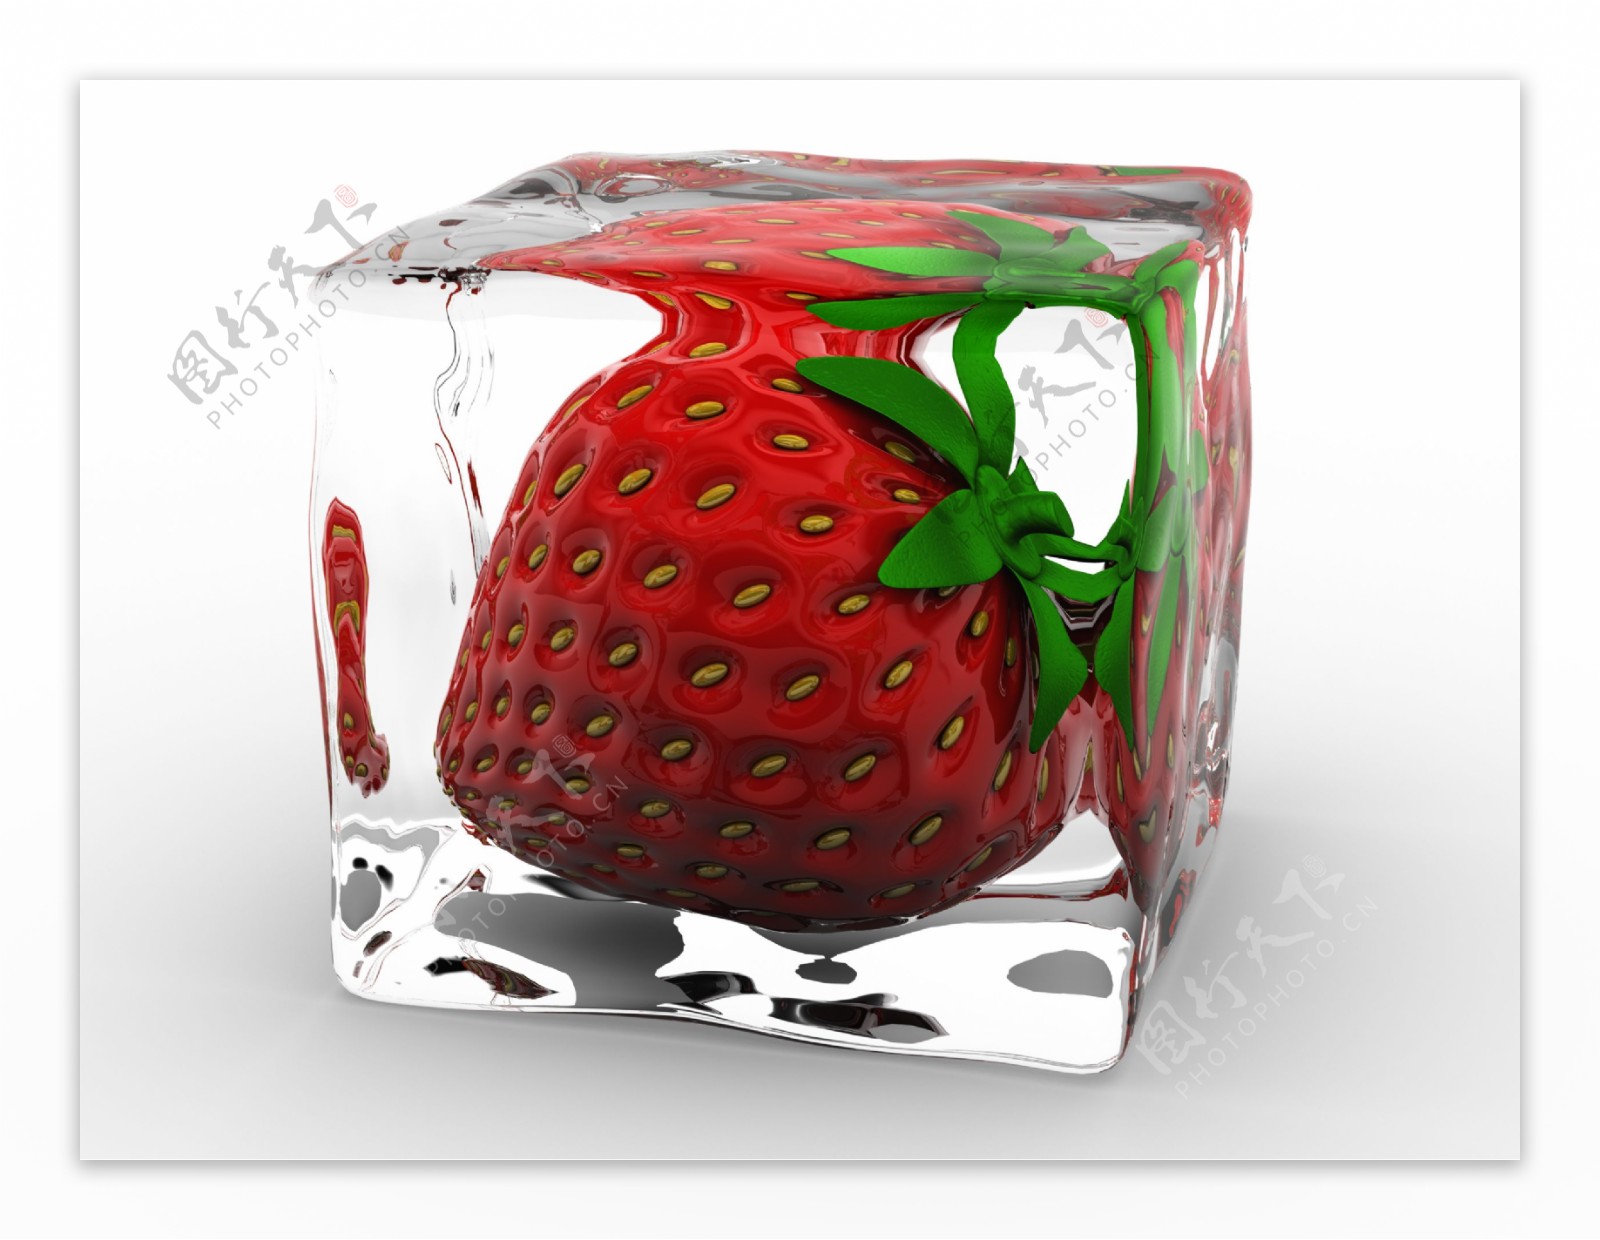 冰块里的草莓图片